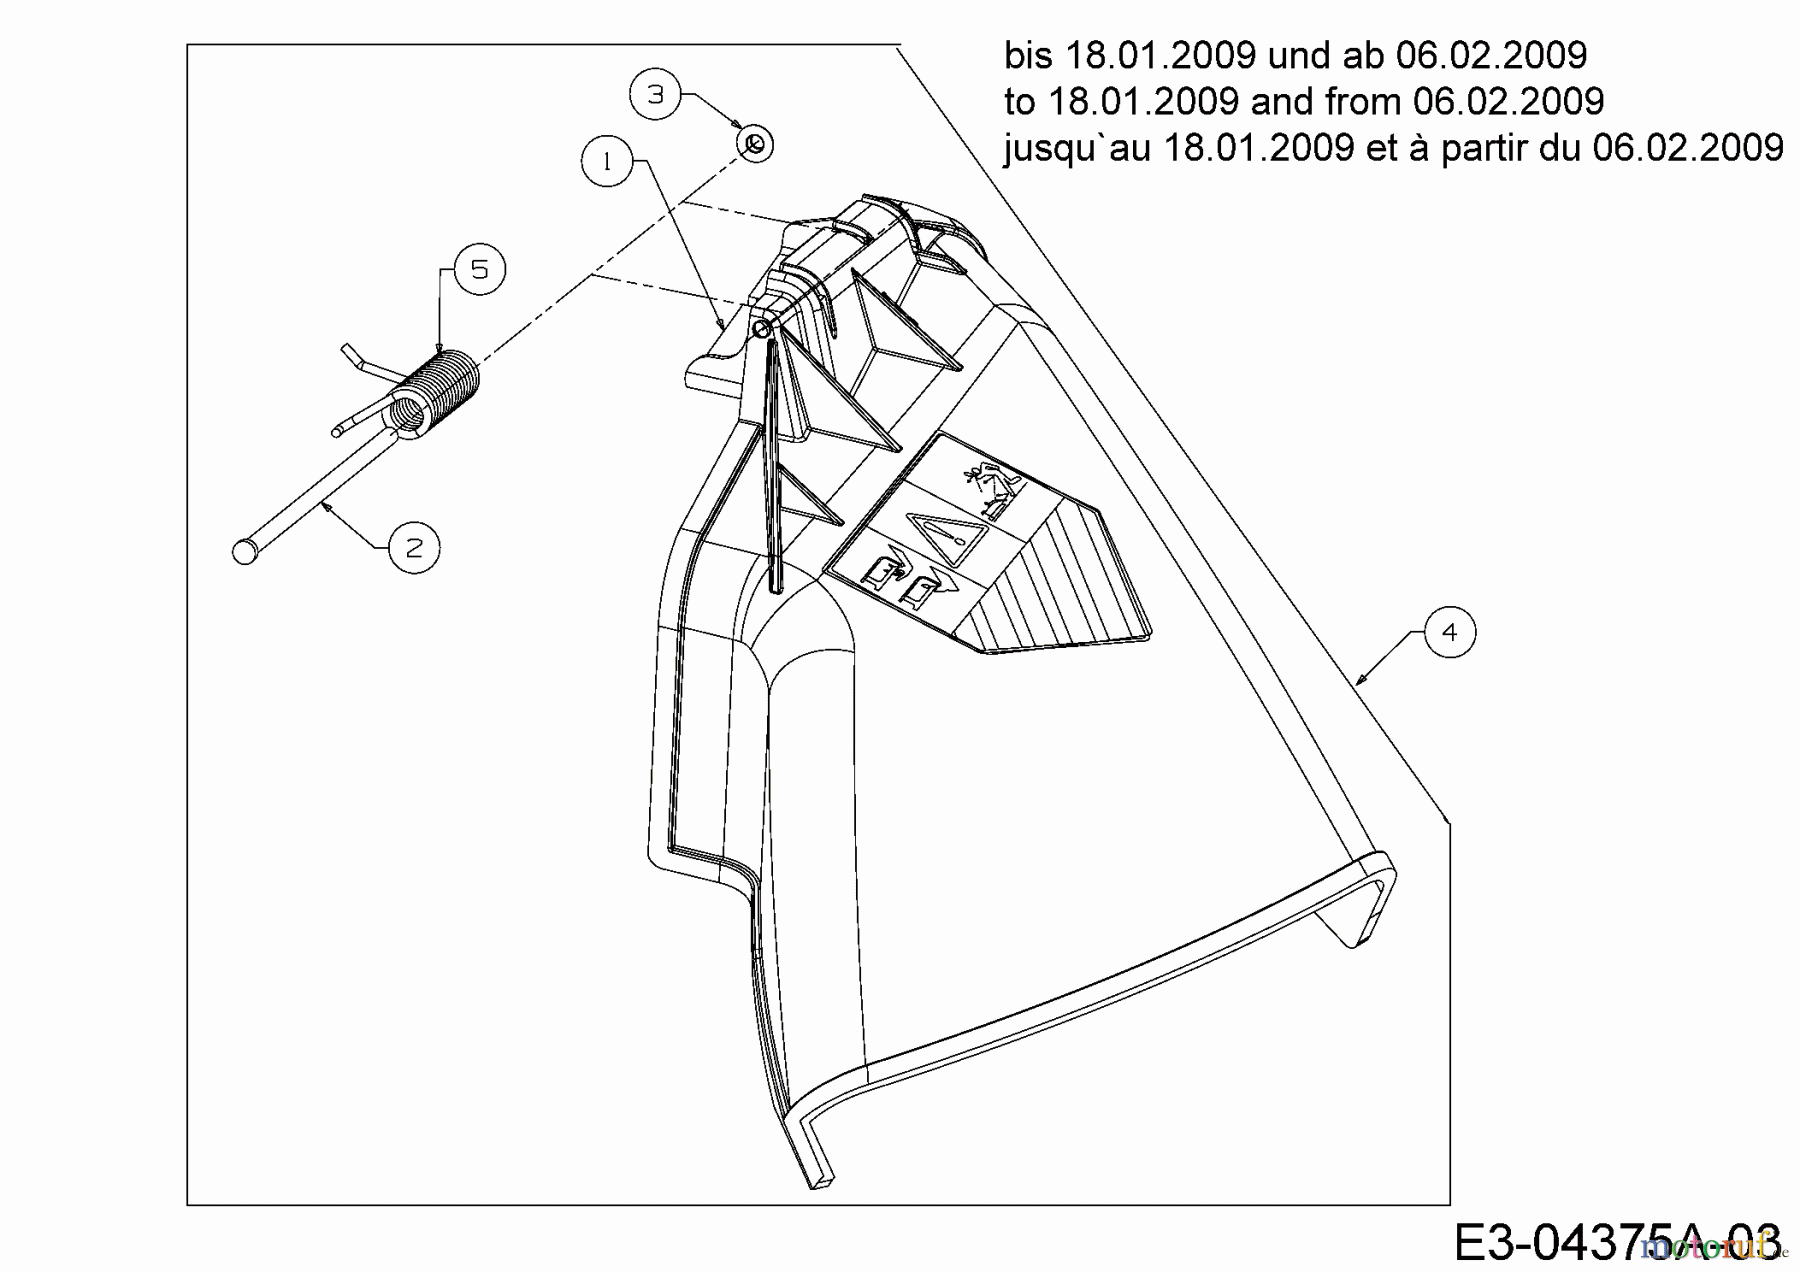  M Tech Rasentraktoren M 175/107 T 13AN768G605  (2009) Deflektor bis 18.01.2009 und ab 06.02.2009